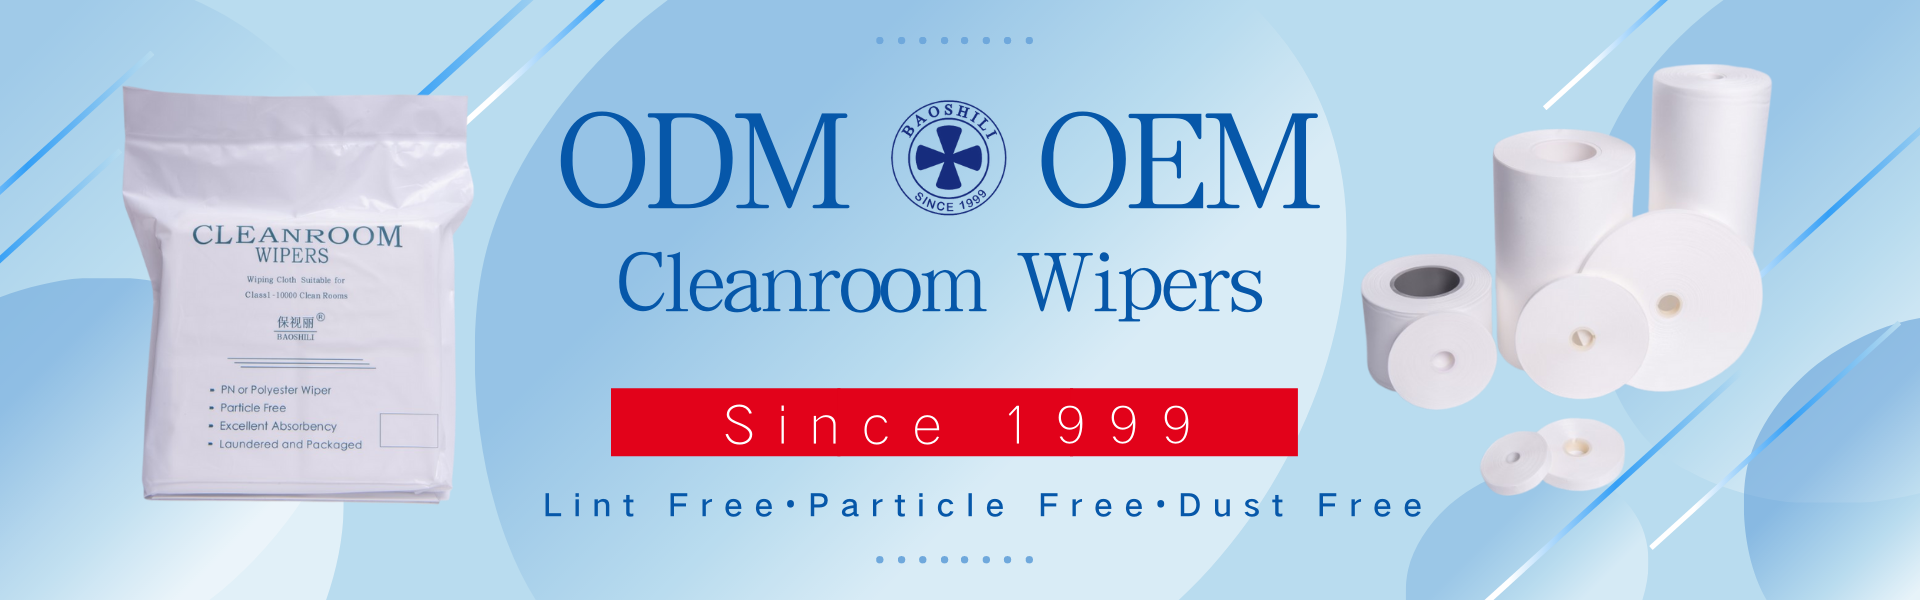 Cleanroom Wipes & Cleanroom Wiper manufacturer